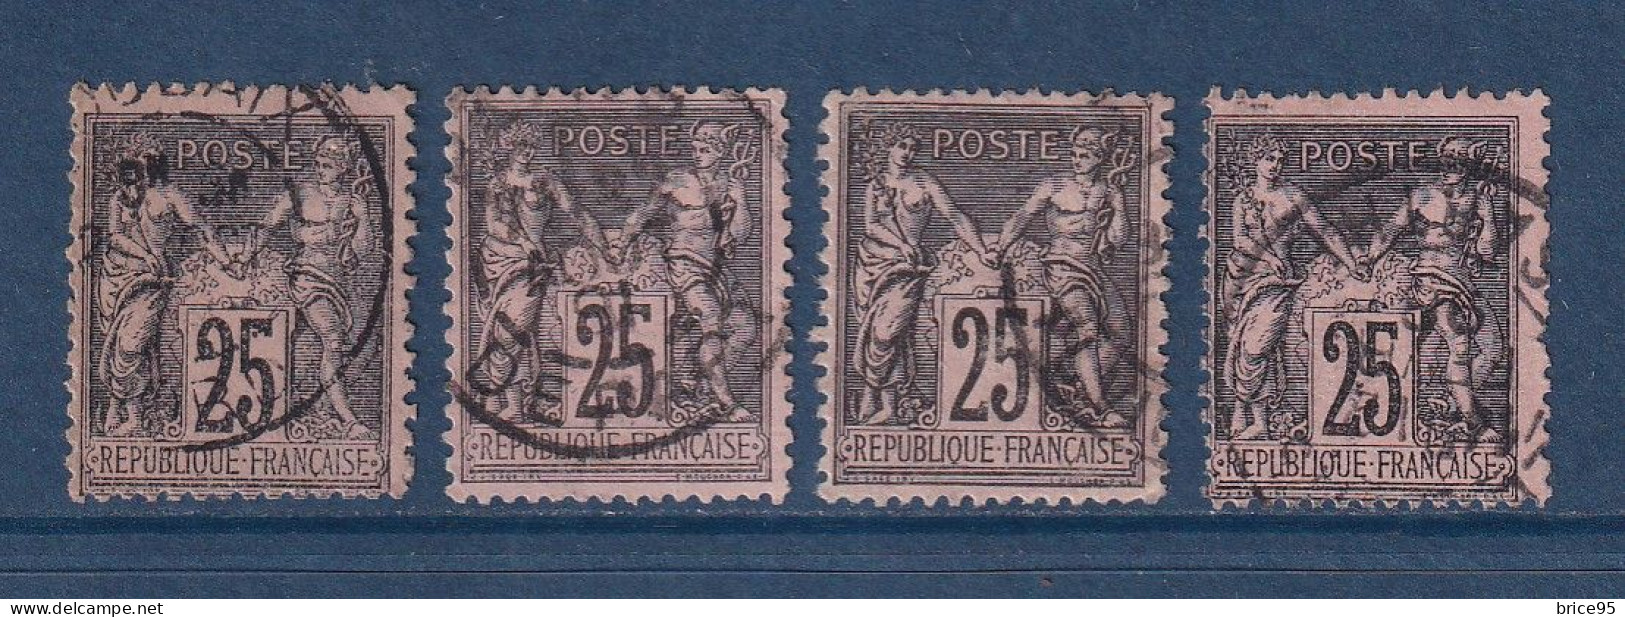 France - YT N° 91 - Oblitéré - 1878 - 1876-1898 Sage (Type II)